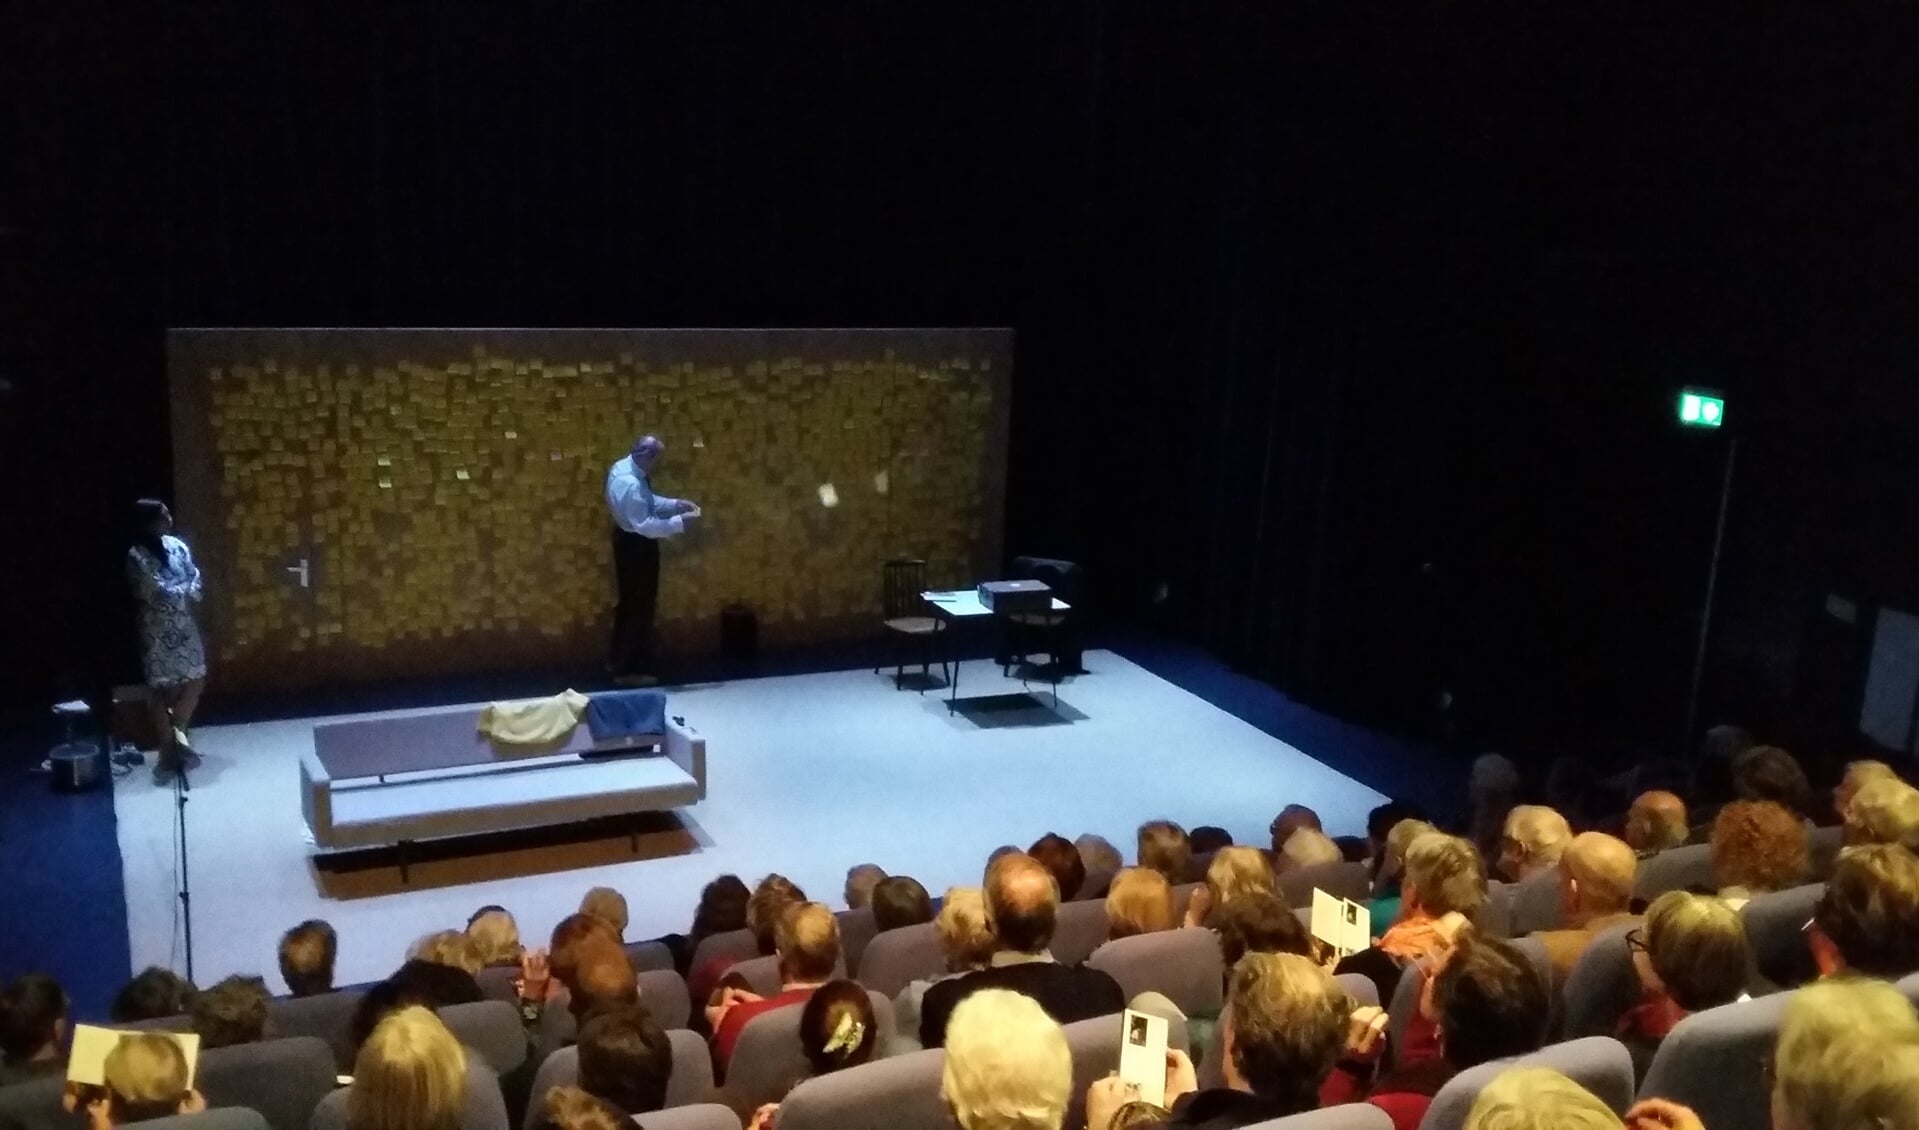 De voorstelling ‘Hoe mooi alles’ in een uitverkochte theaterzaal van het Lichtruim. (foto Emma Schlamilch)